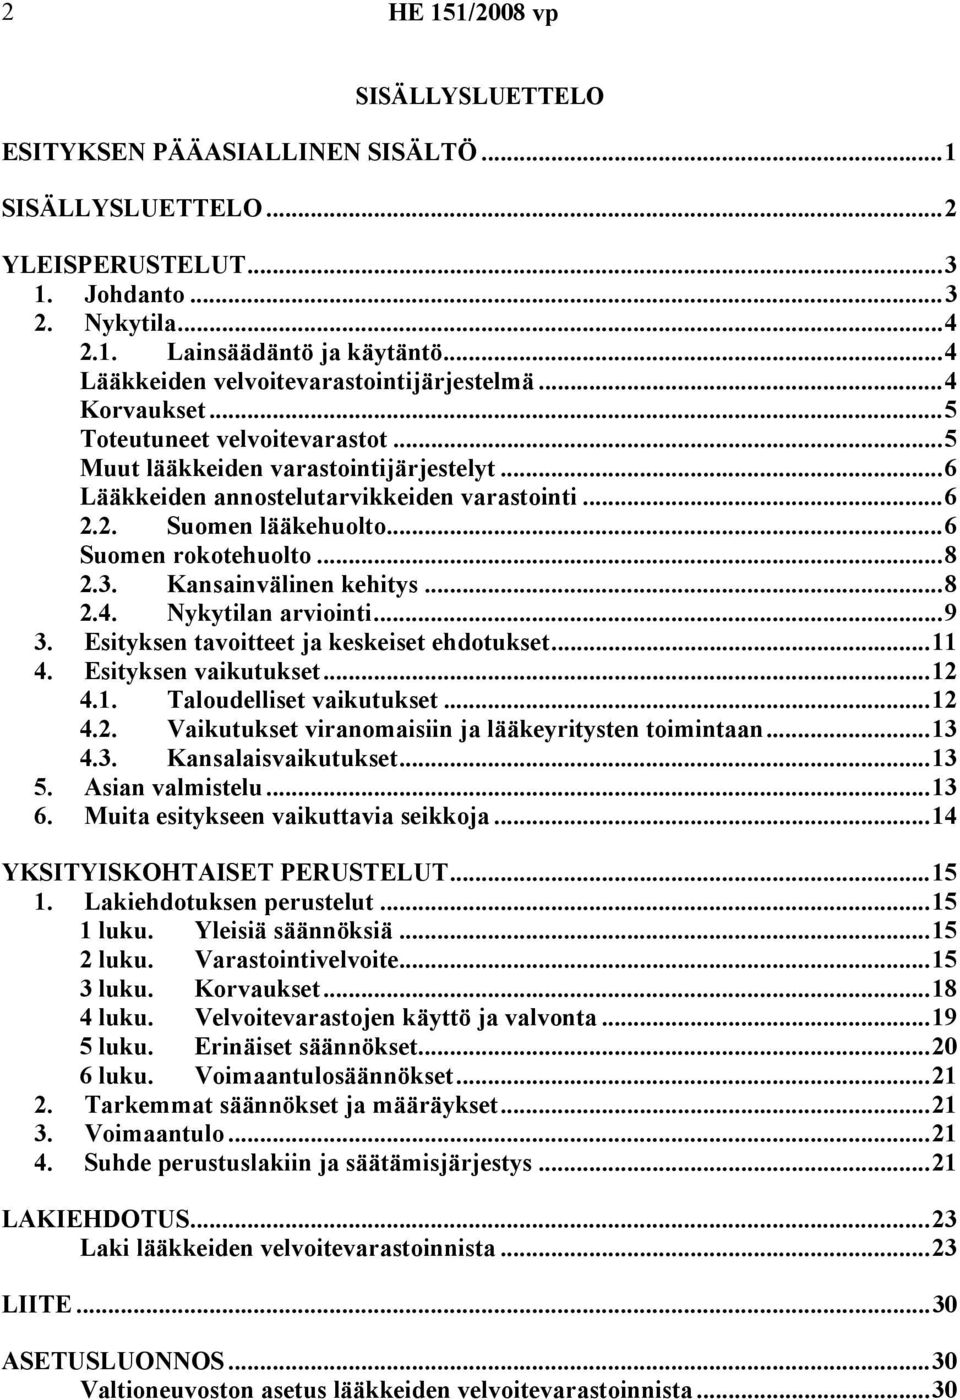 2. Suomen lääkehuolto...6 Suomen rokotehuolto...8 2.3. Kansainvälinen kehitys...8 2.4. Nykytilan arviointi...9 3. Esityksen tavoitteet ja keskeiset ehdotukset...11 4. Esityksen vaikutukset...12 4.1. Taloudelliset vaikutukset.